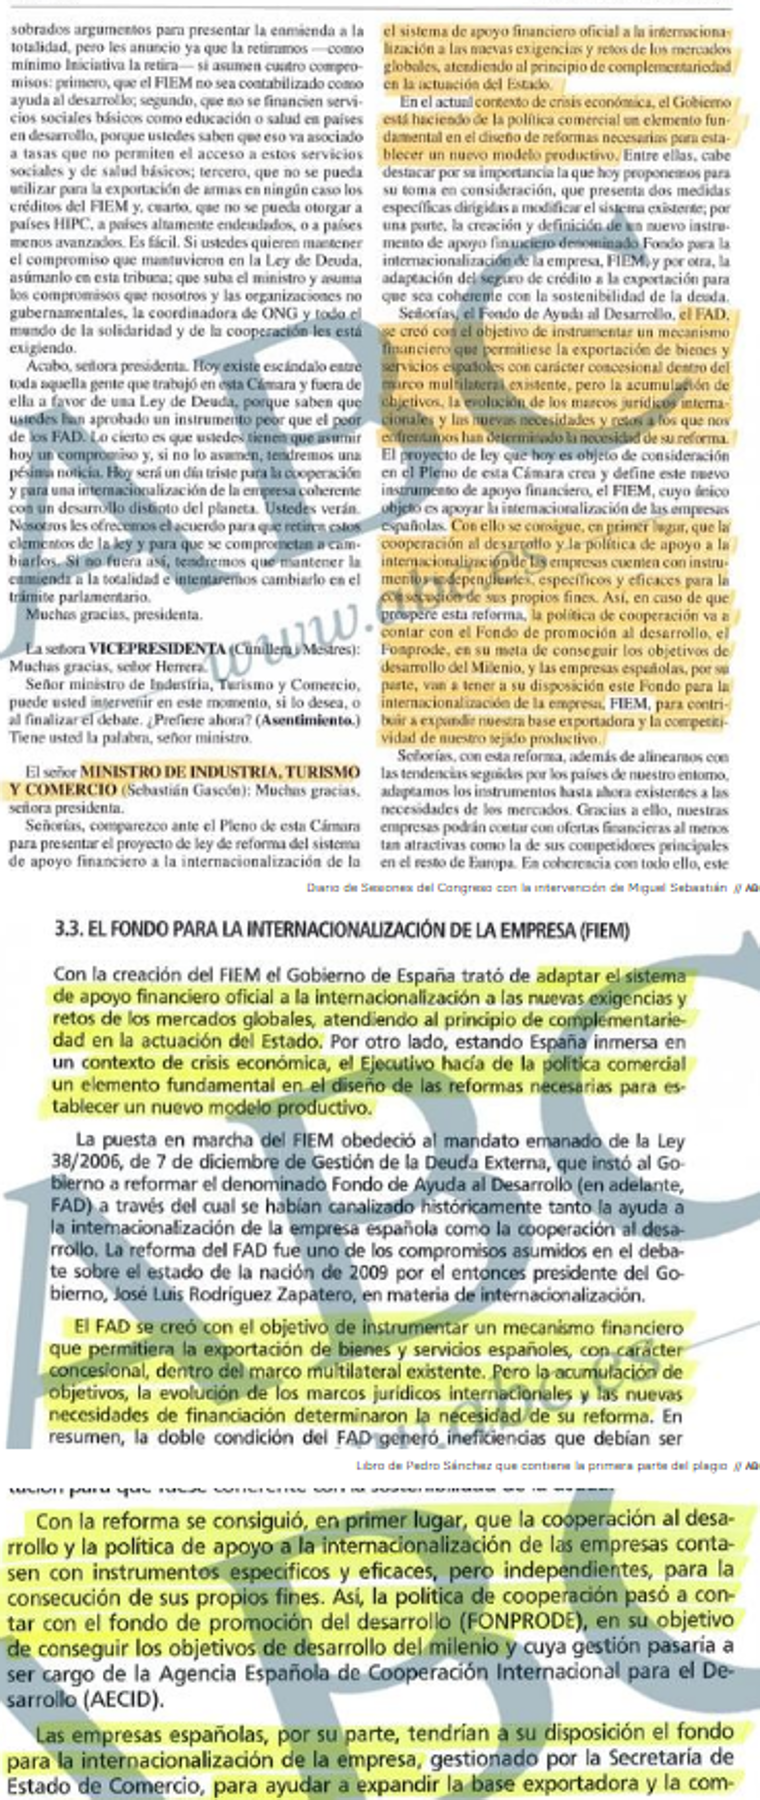 Uno de las páginas plagiadas en el libro de Pedro Sánchez y Carlos Ocaña